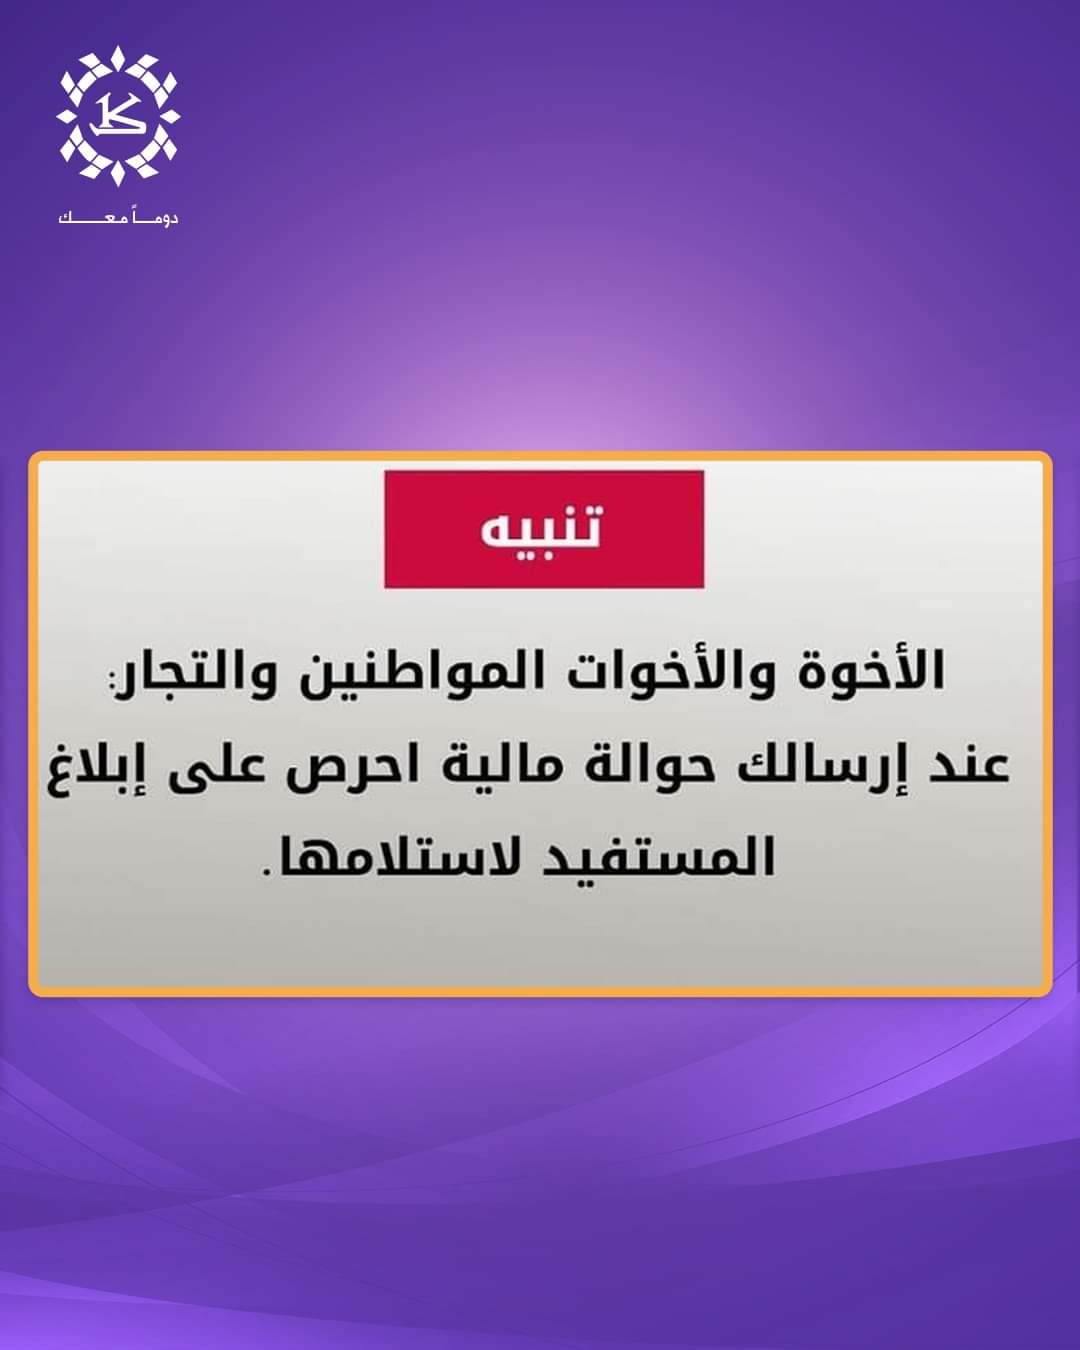 أول بنك يتفاعل مع تنبية البنك المركزي اليمني .. بنك الكريمي يصدر اعلان جديد (تفاصيل) ..!!